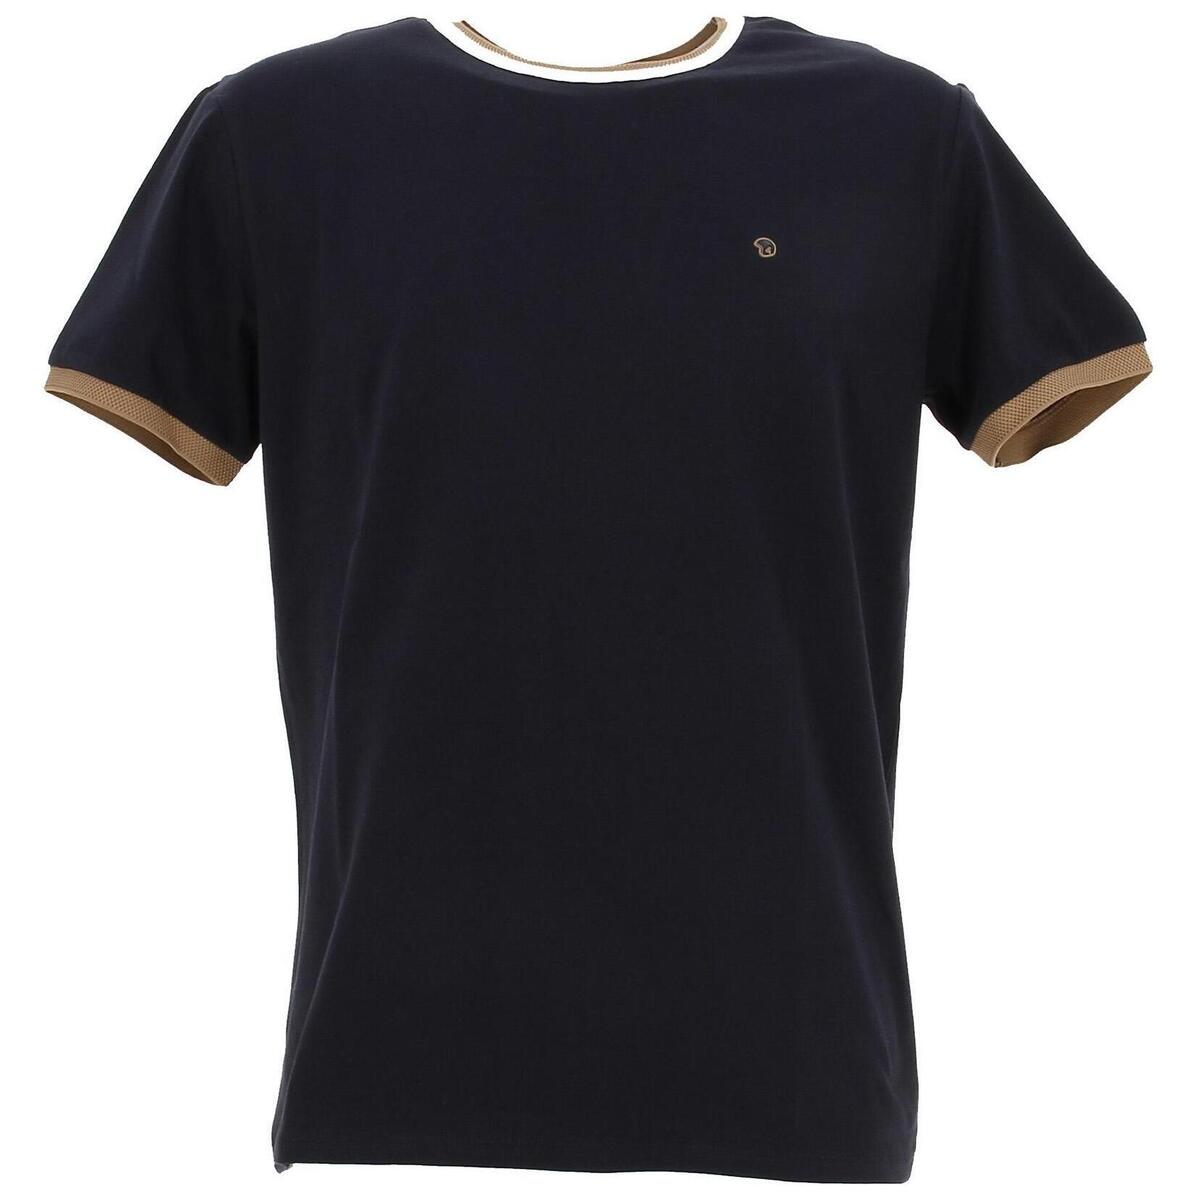 Vêtements Homme T-shirts manches courtes Benson&cherry Classic t-shirt mc Bleu